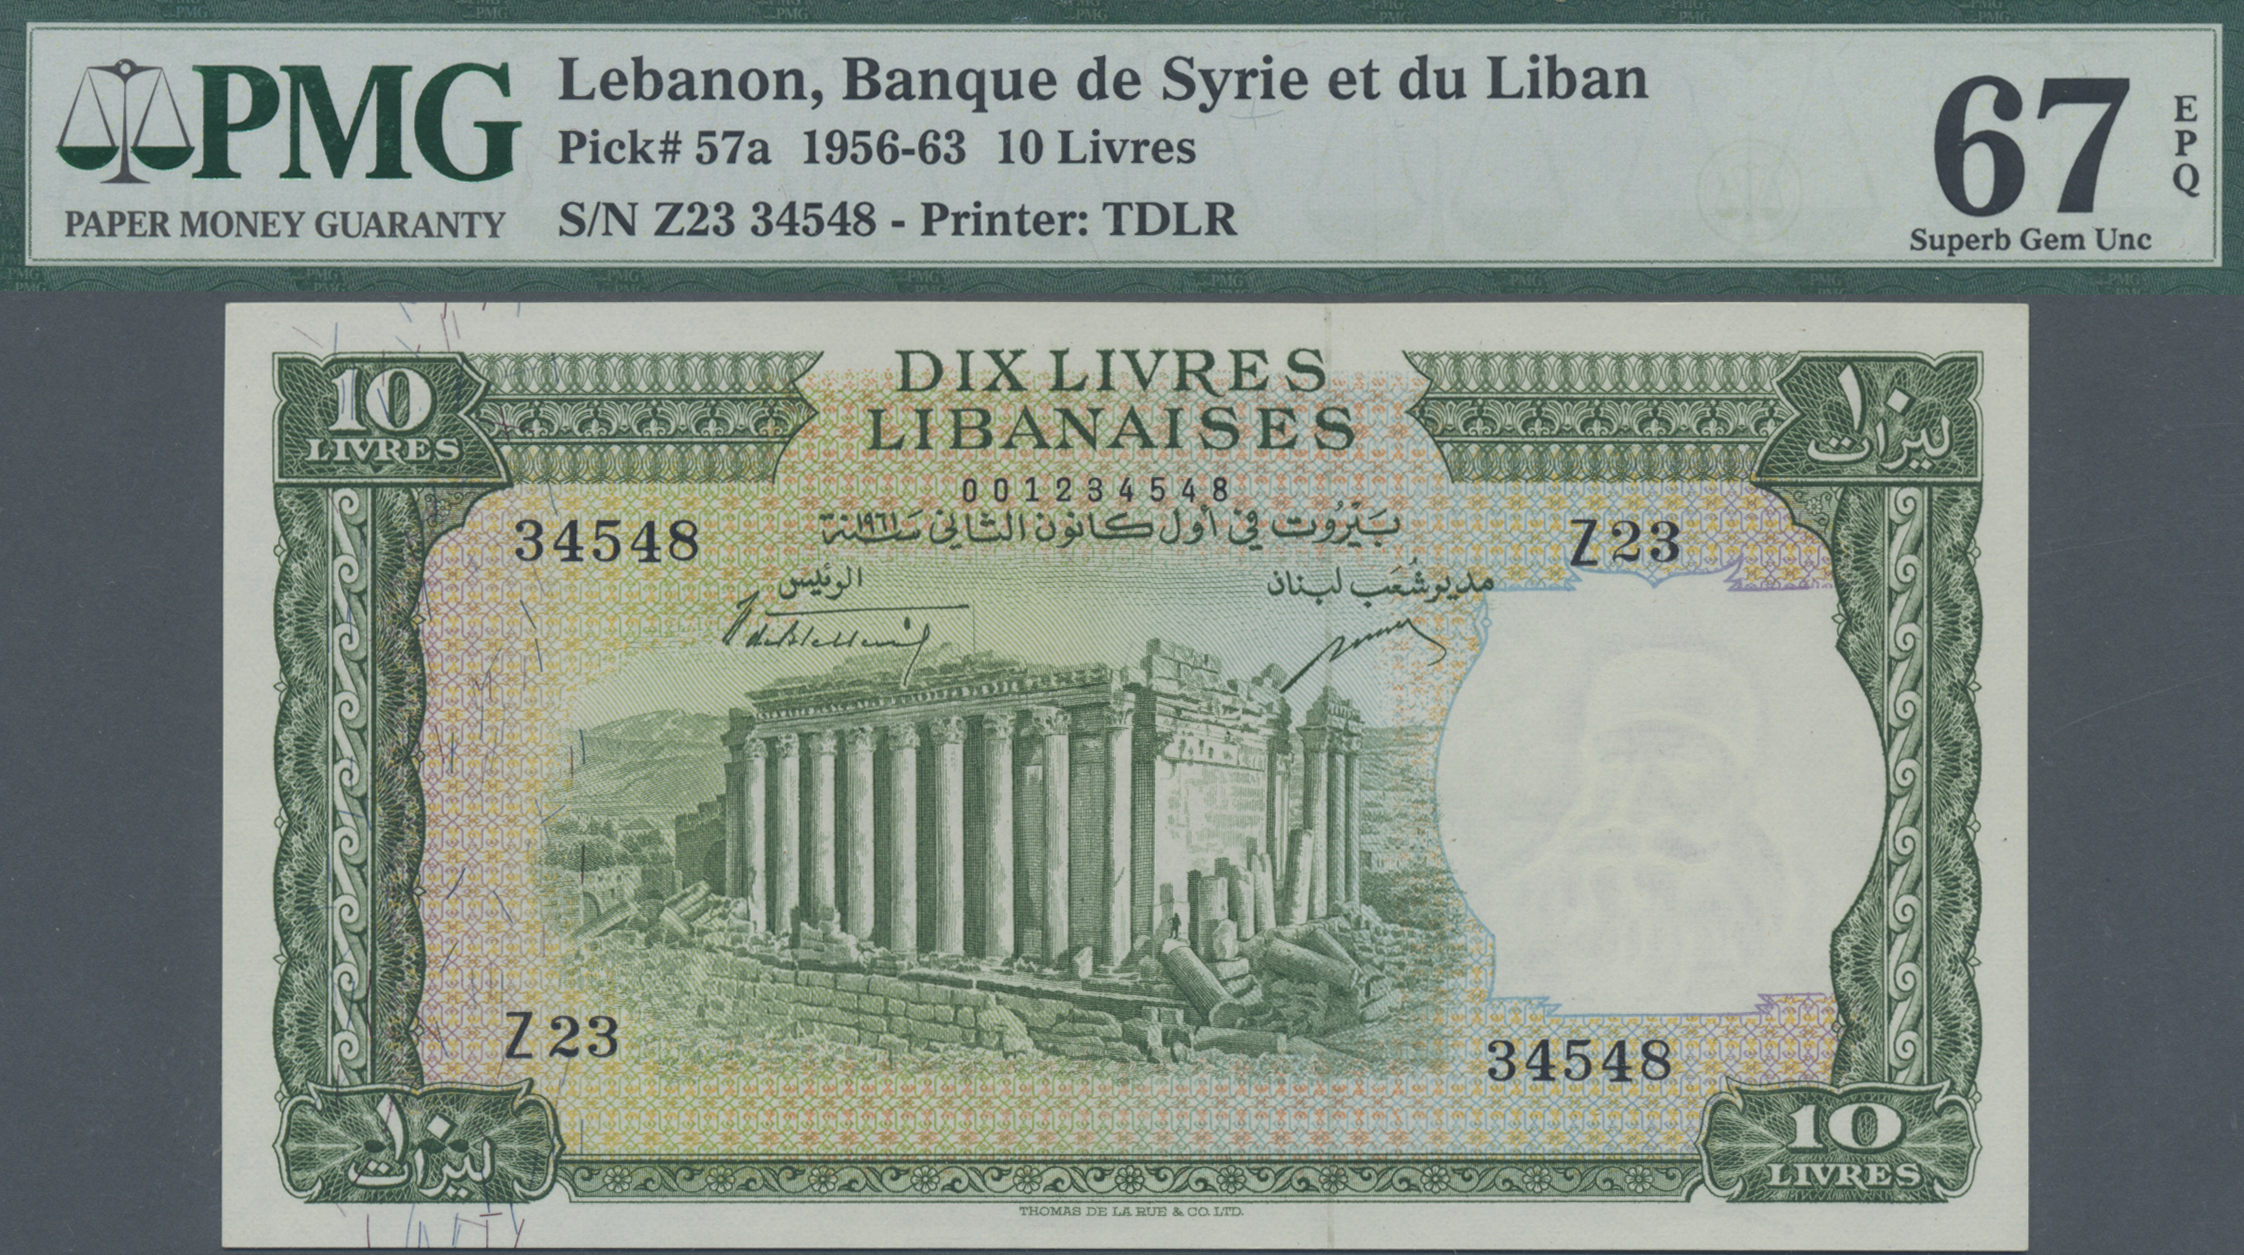 Lebanon 250 Livres 1988 P 67 e aUNC LOT 2 PCS PAIR 